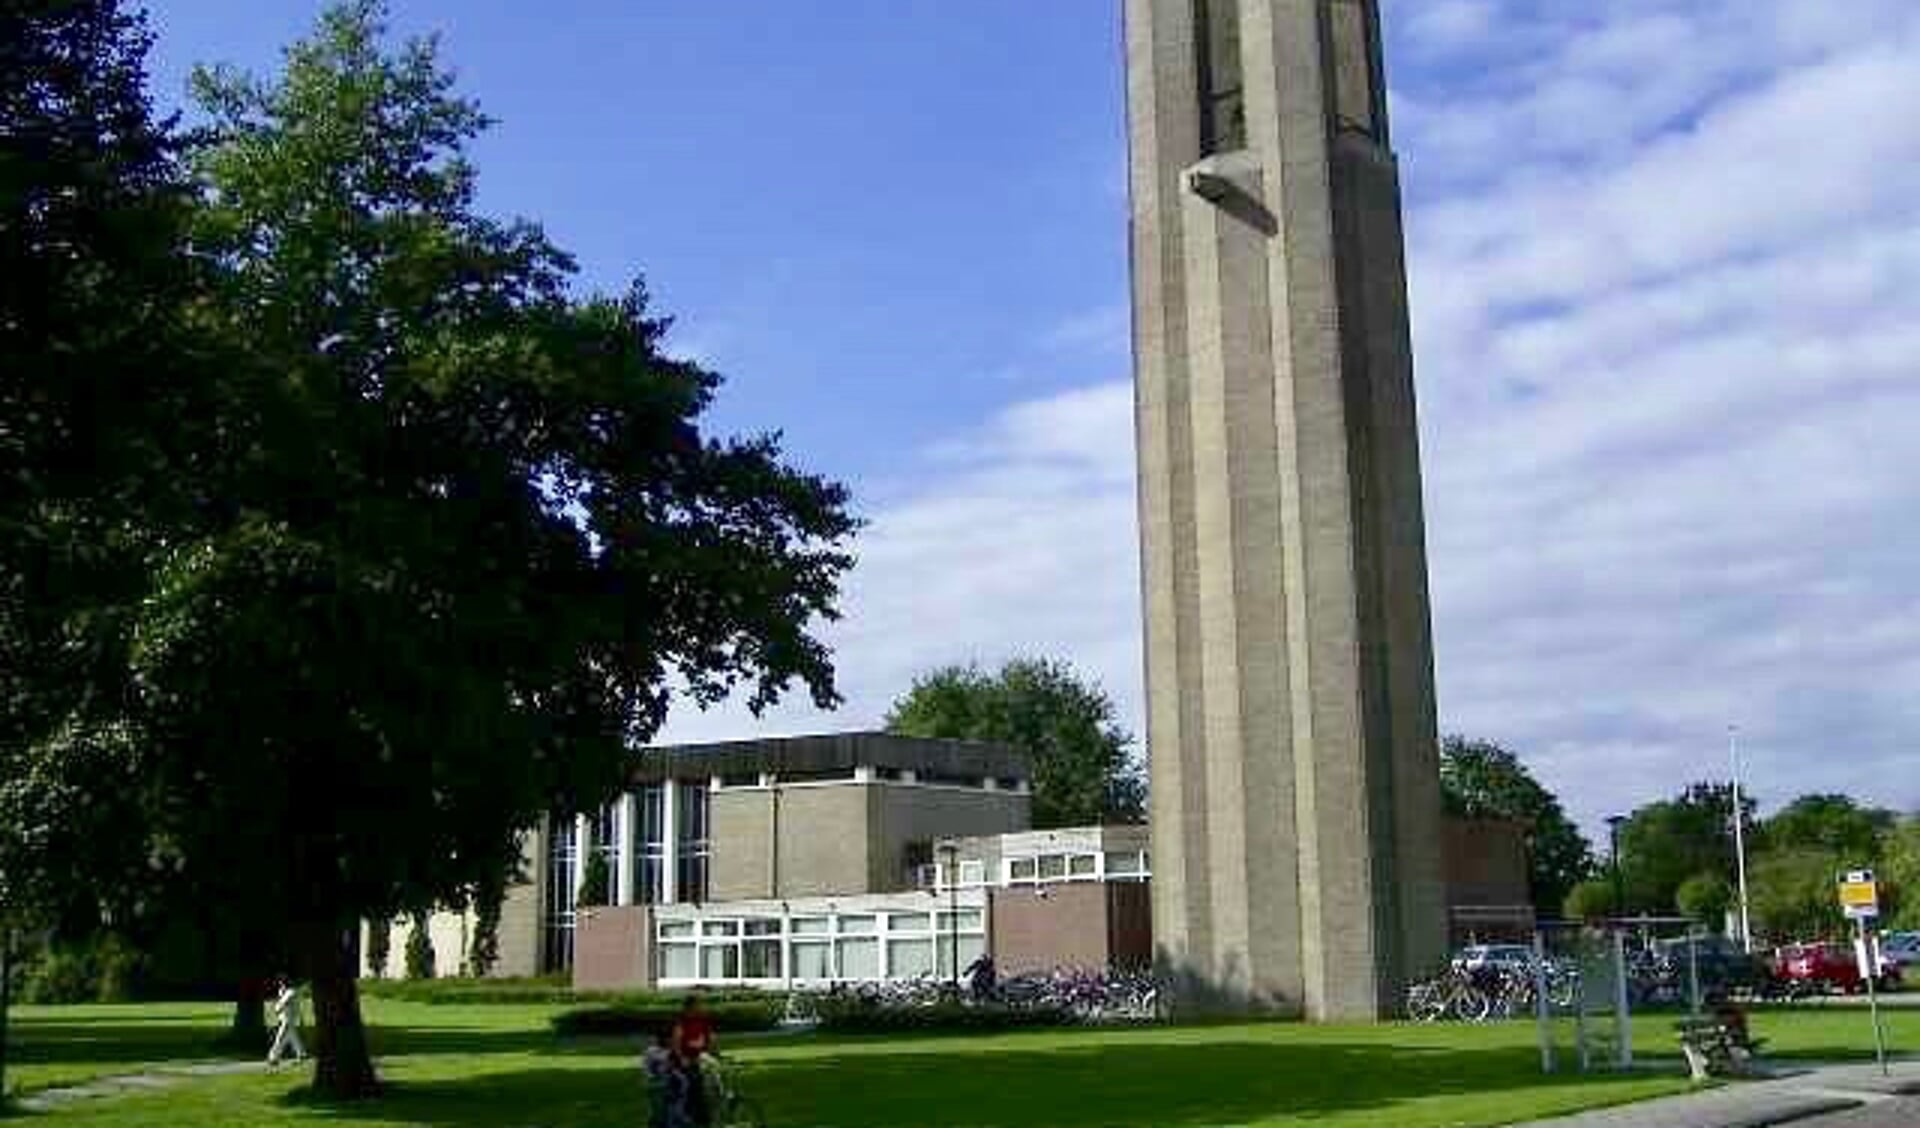  Kerkgebouw De Ark.